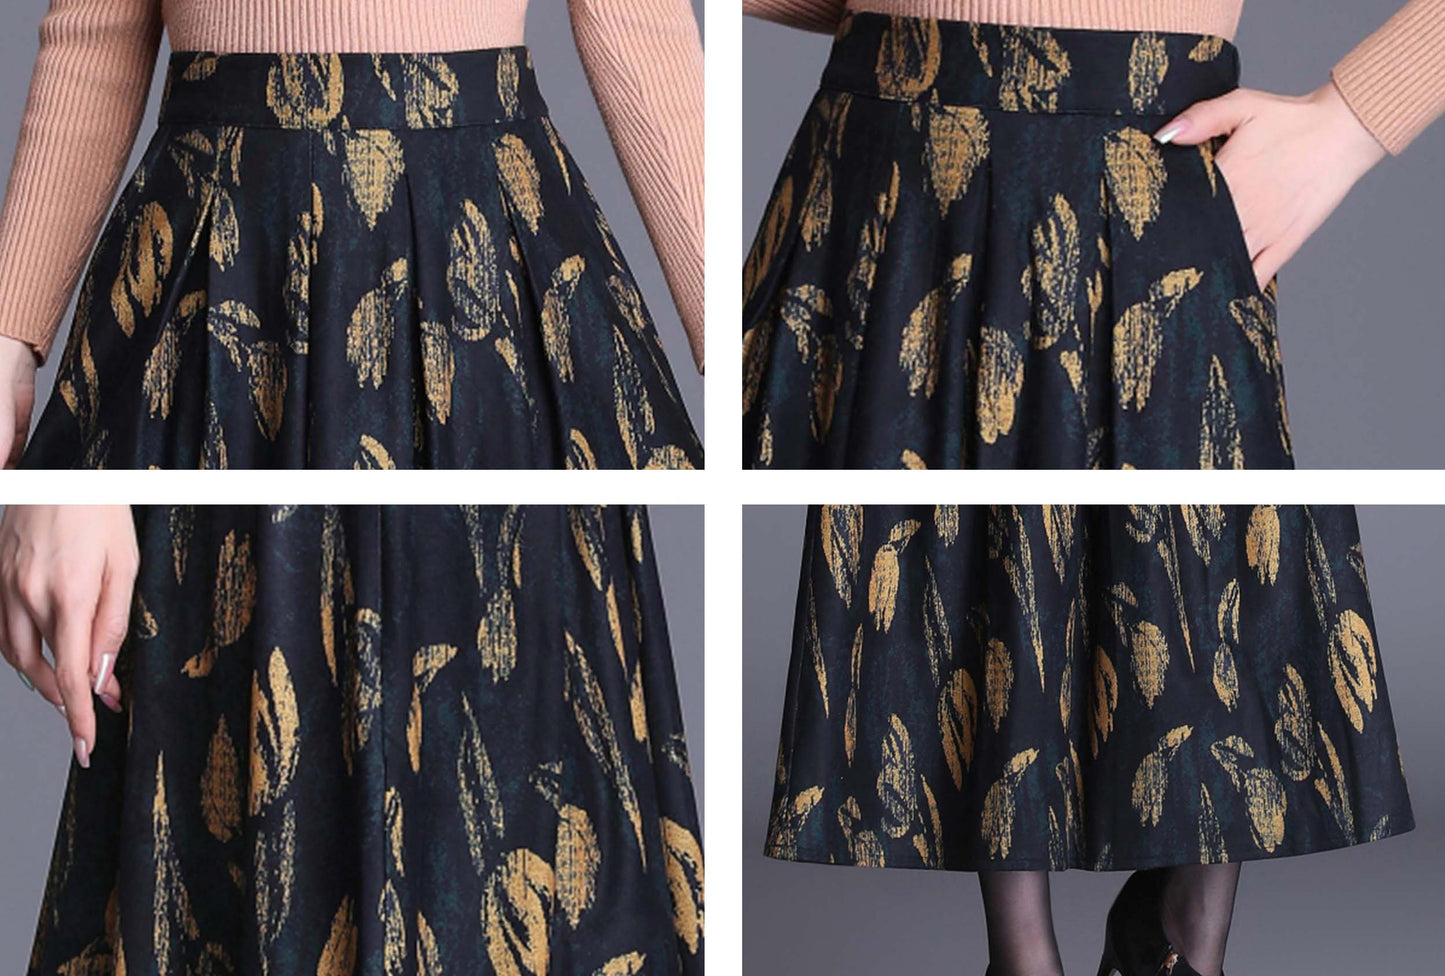 Yellow High Waist Print Midi Skirt with Pocket